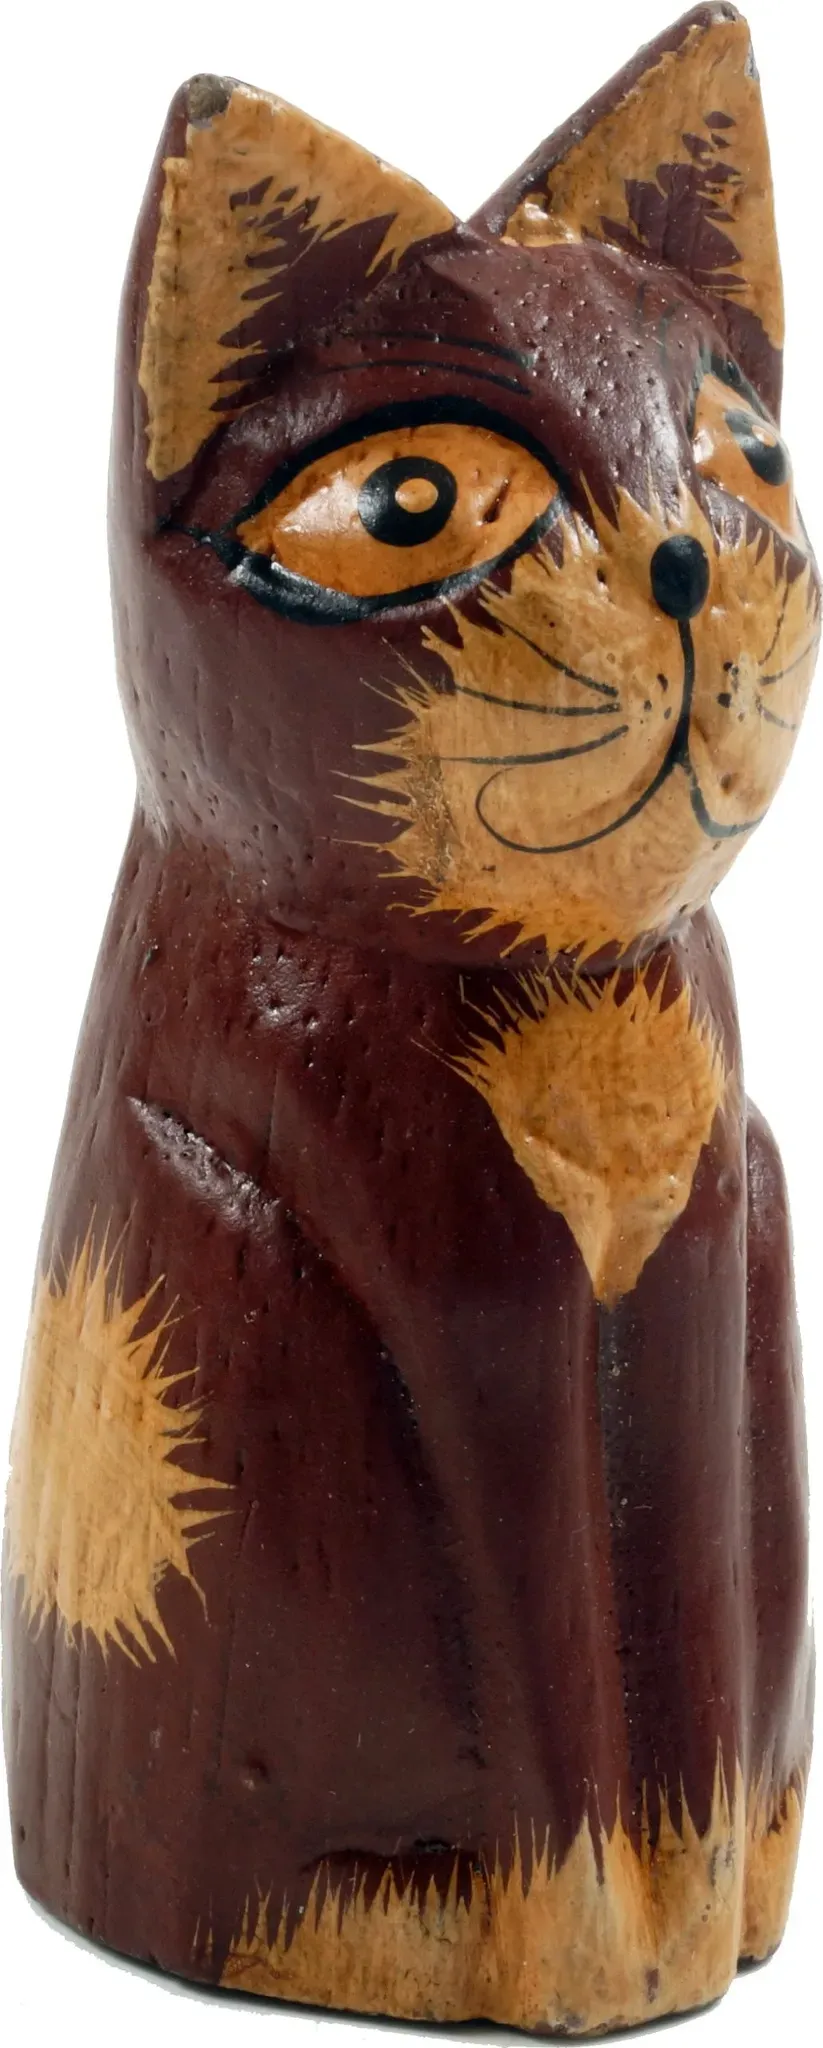 GURU SHOP Deko Katze, Holzkatze, Rotbraun, Farbe: Rotbraun, 9x4x4 cm, Tierfiguren